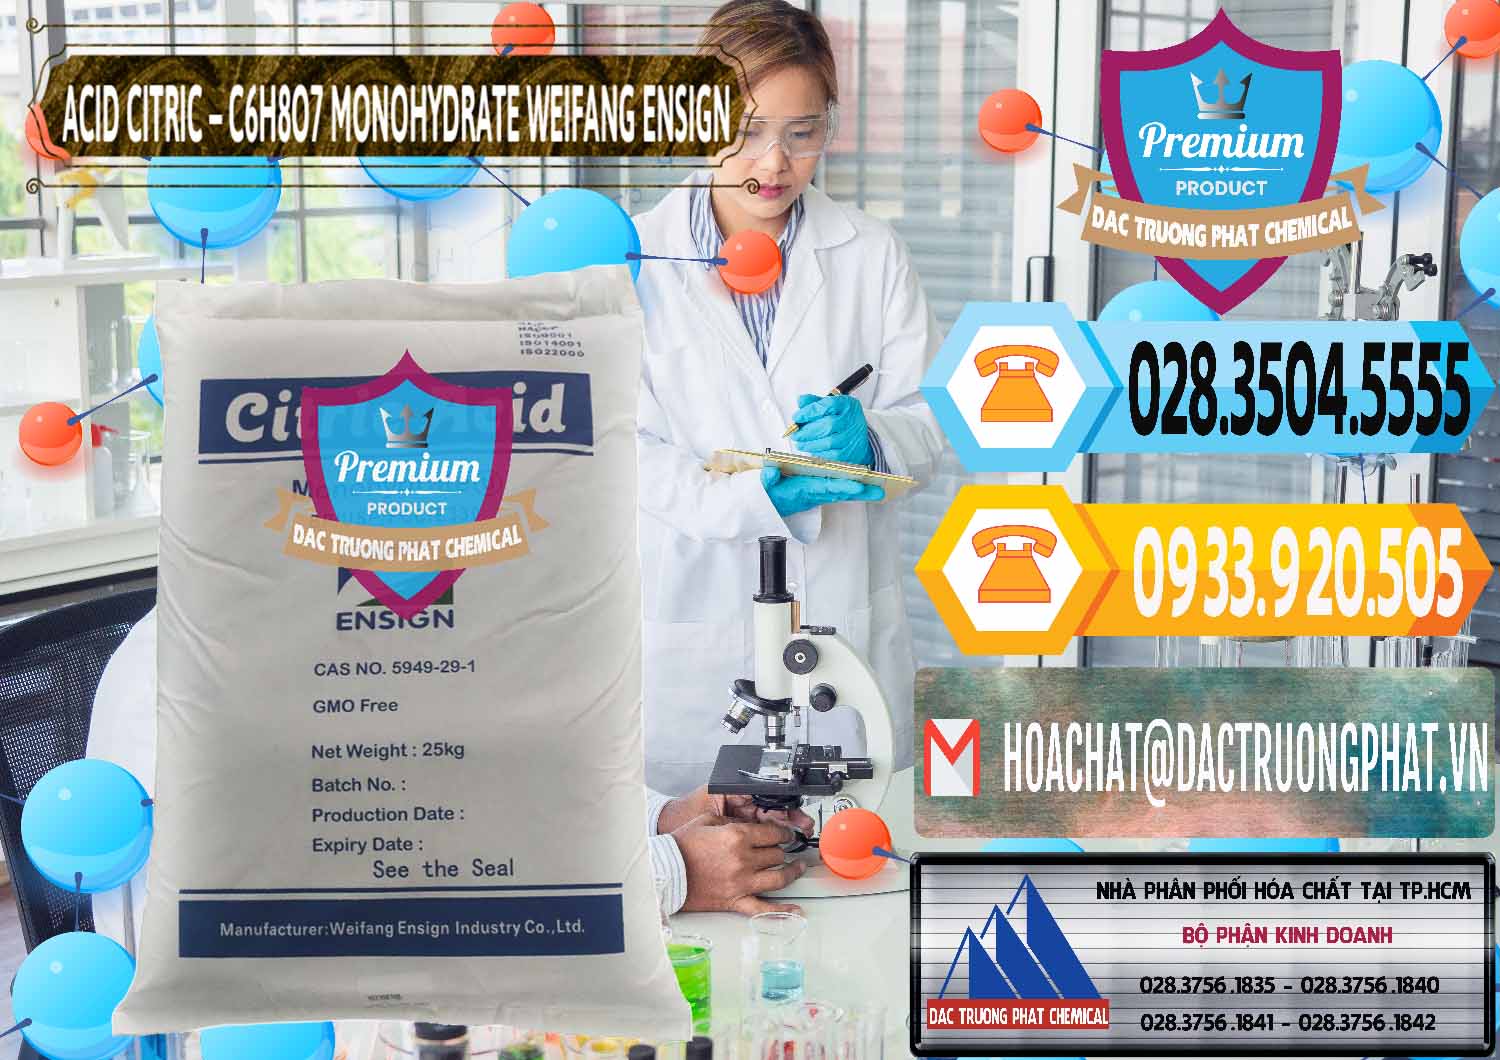 Cty chuyên nhập khẩu & bán Acid Citric - Axit Citric Monohydrate Weifang Trung Quốc China - 0009 - Cty chuyên cung cấp - kinh doanh hóa chất tại TP.HCM - hoachattayrua.net